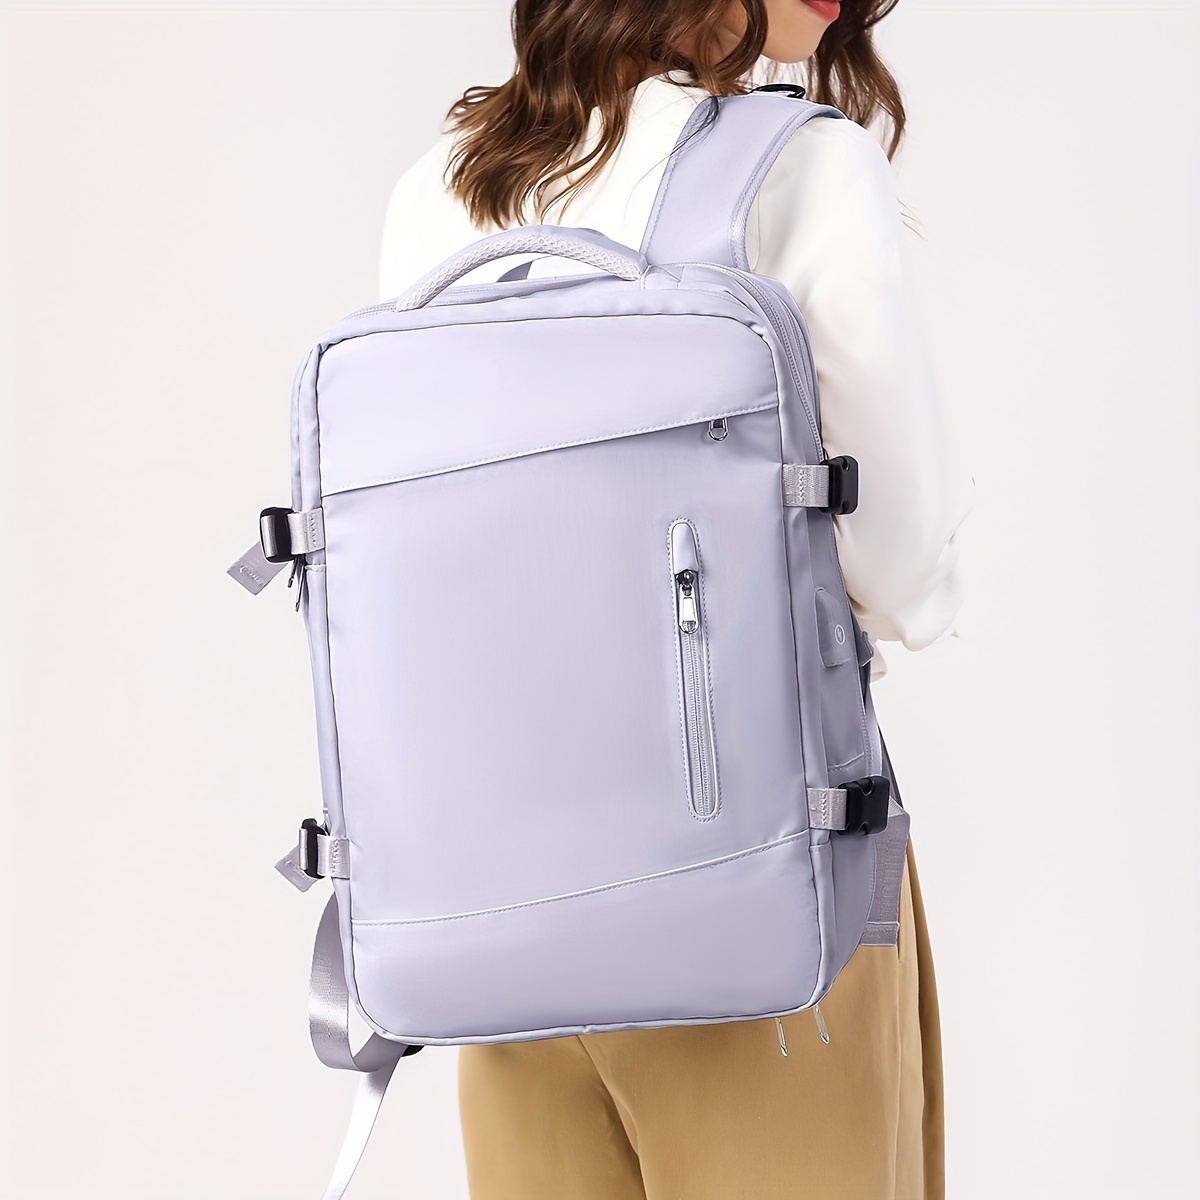 For Spirit Airlines - Bolsa de viaje plegable para llevar en el equipaje,  bolsa deportiva de fin de semana durante la noche para mujeres y niñas,  1112